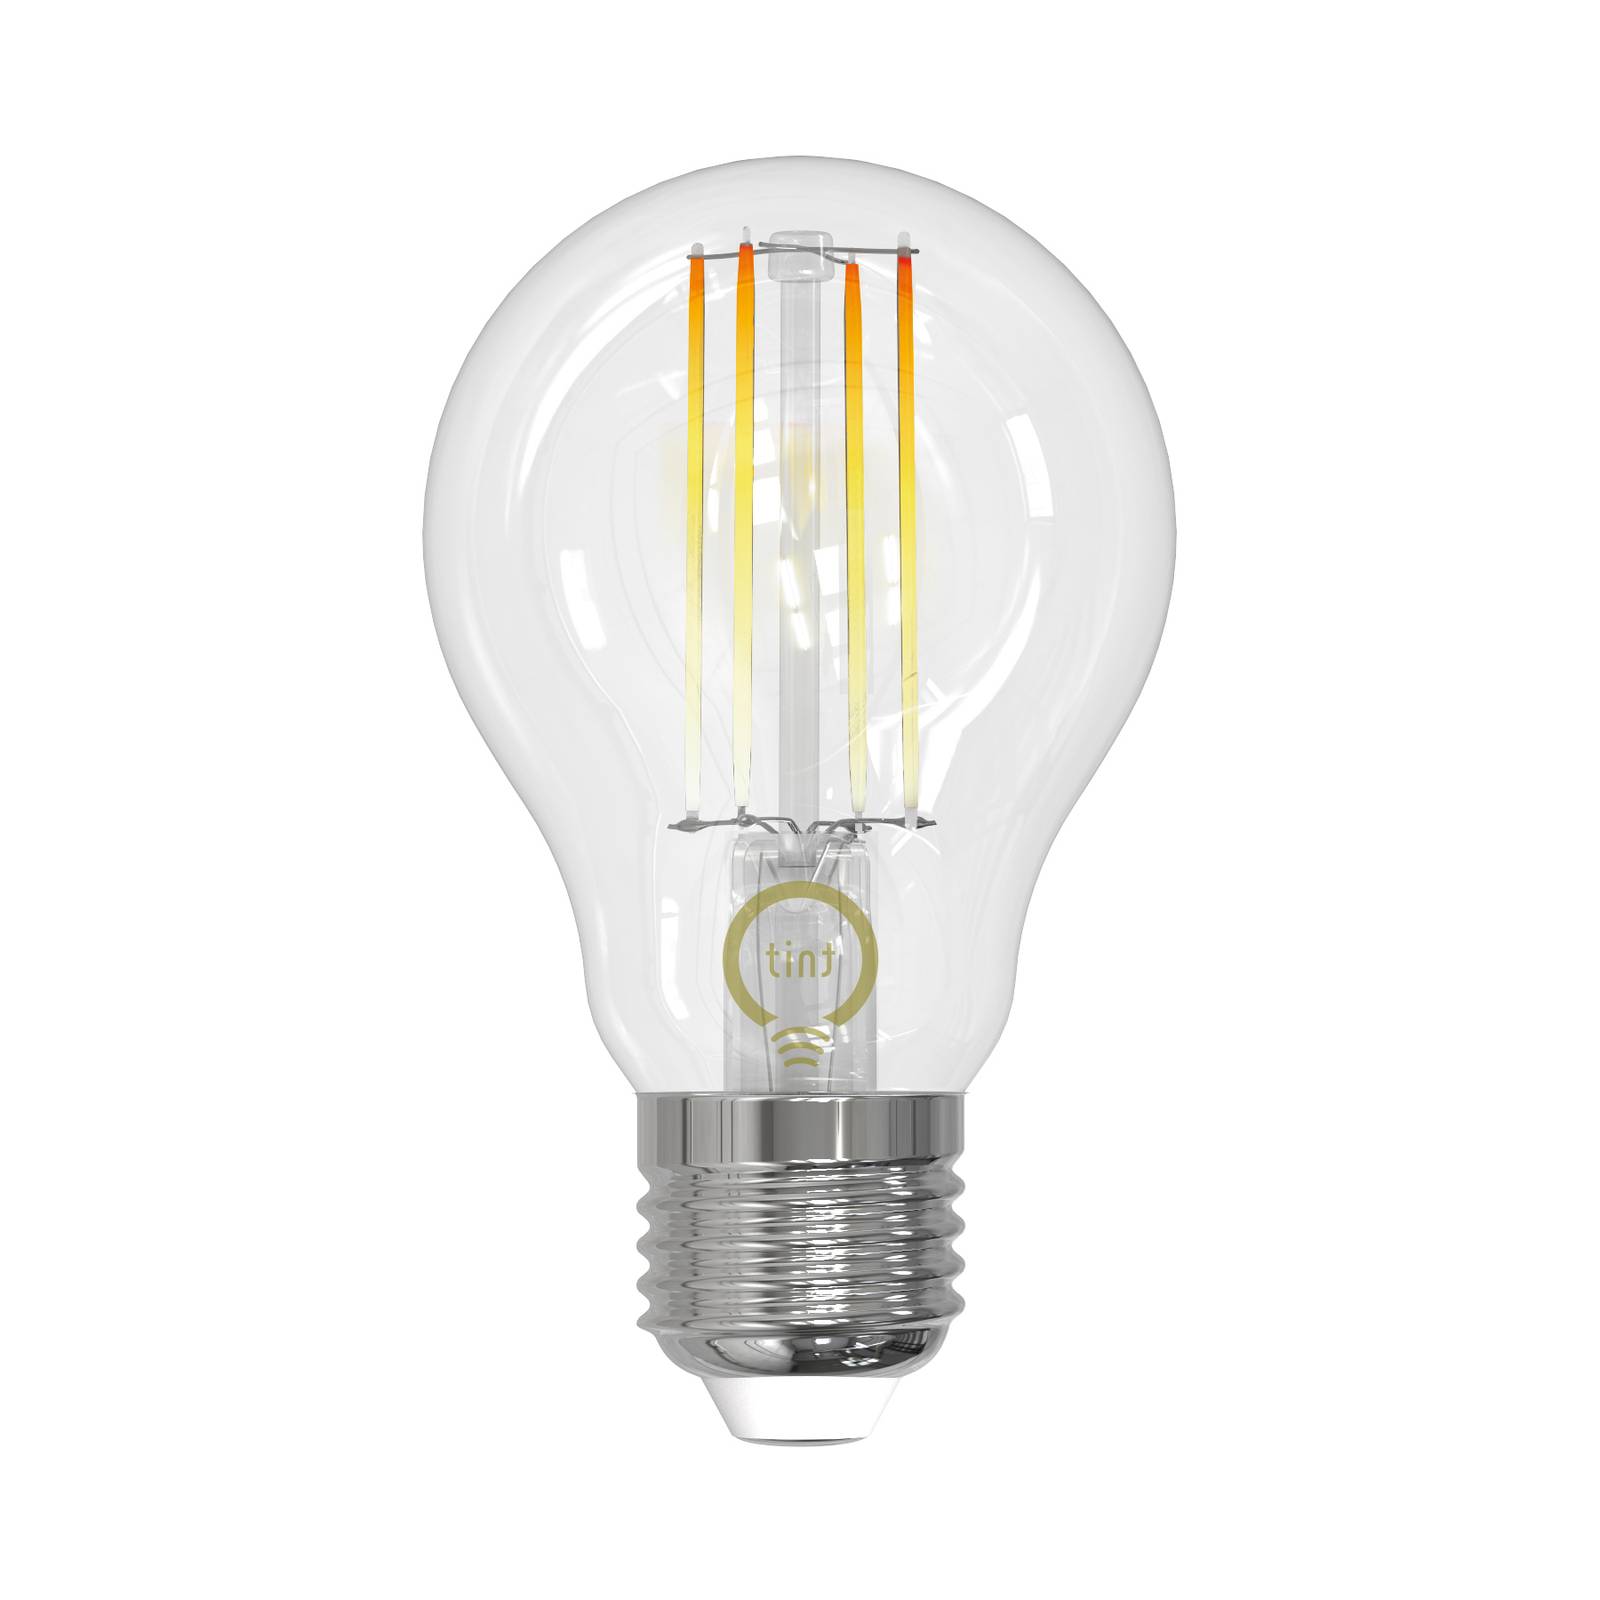 Müller Licht tint -LED-filamenttilamppu E27 7W CCT